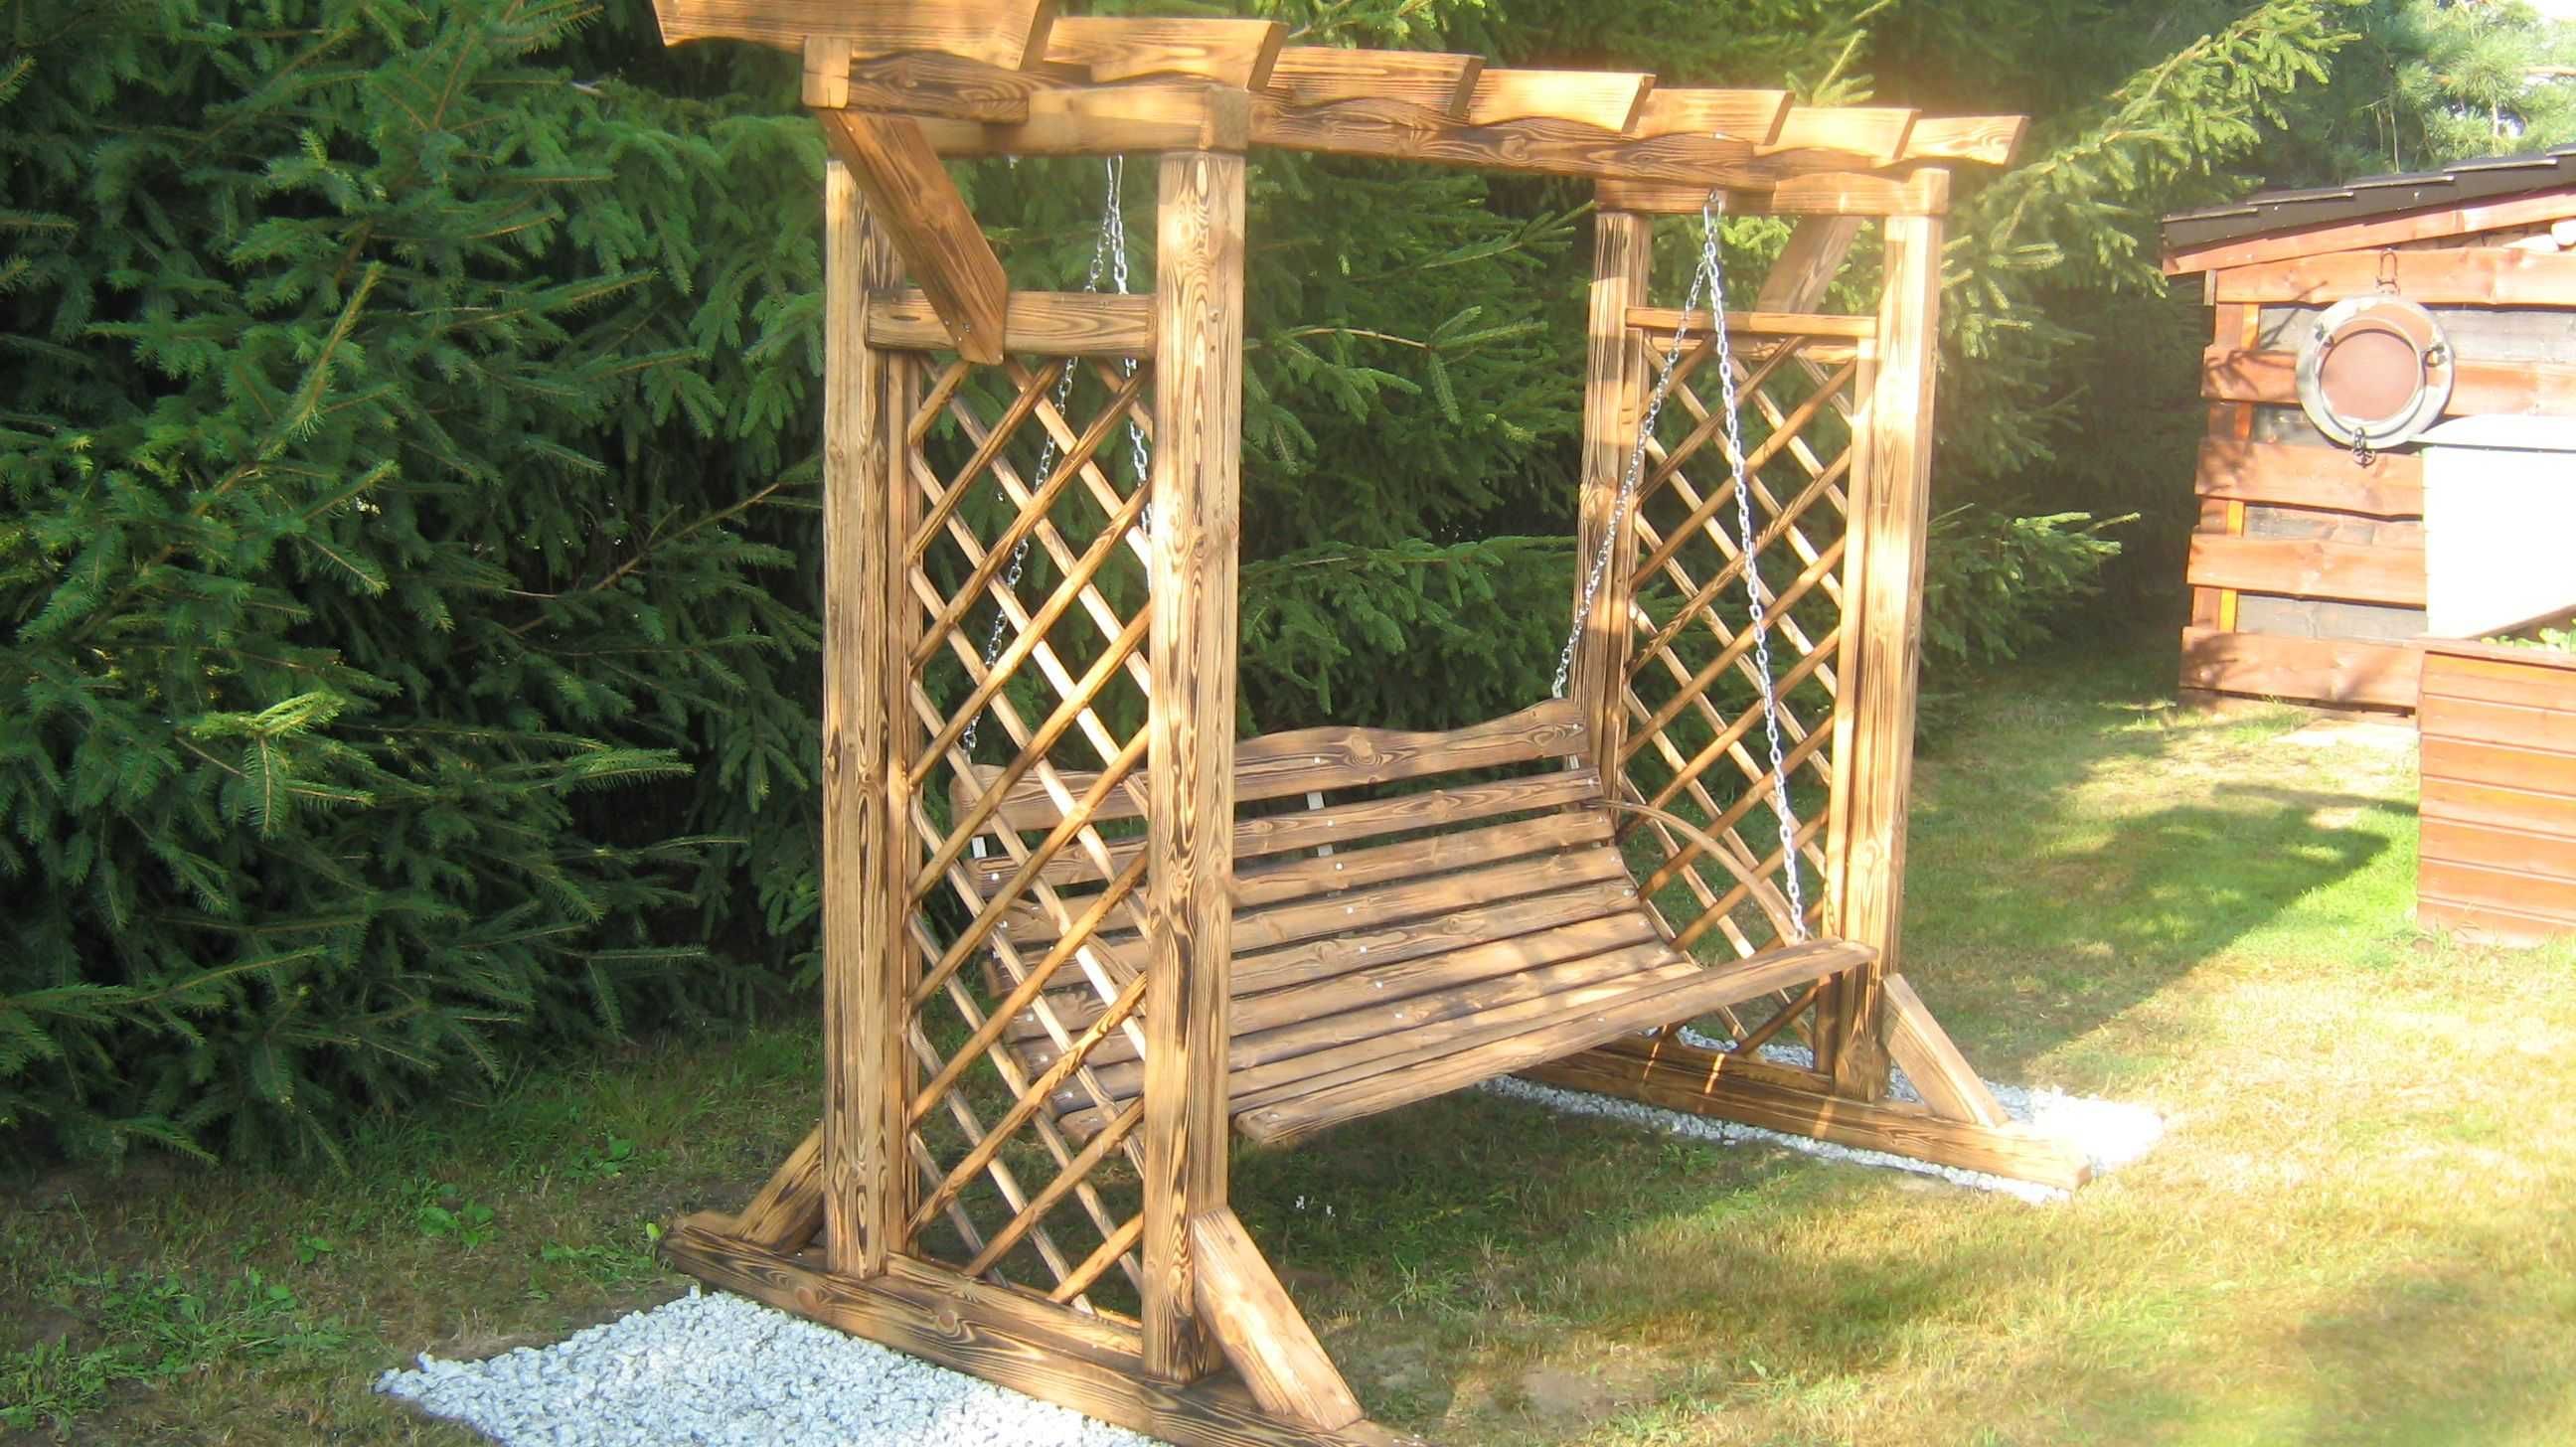 Zestaw mebli ogrodowych stół + ławki